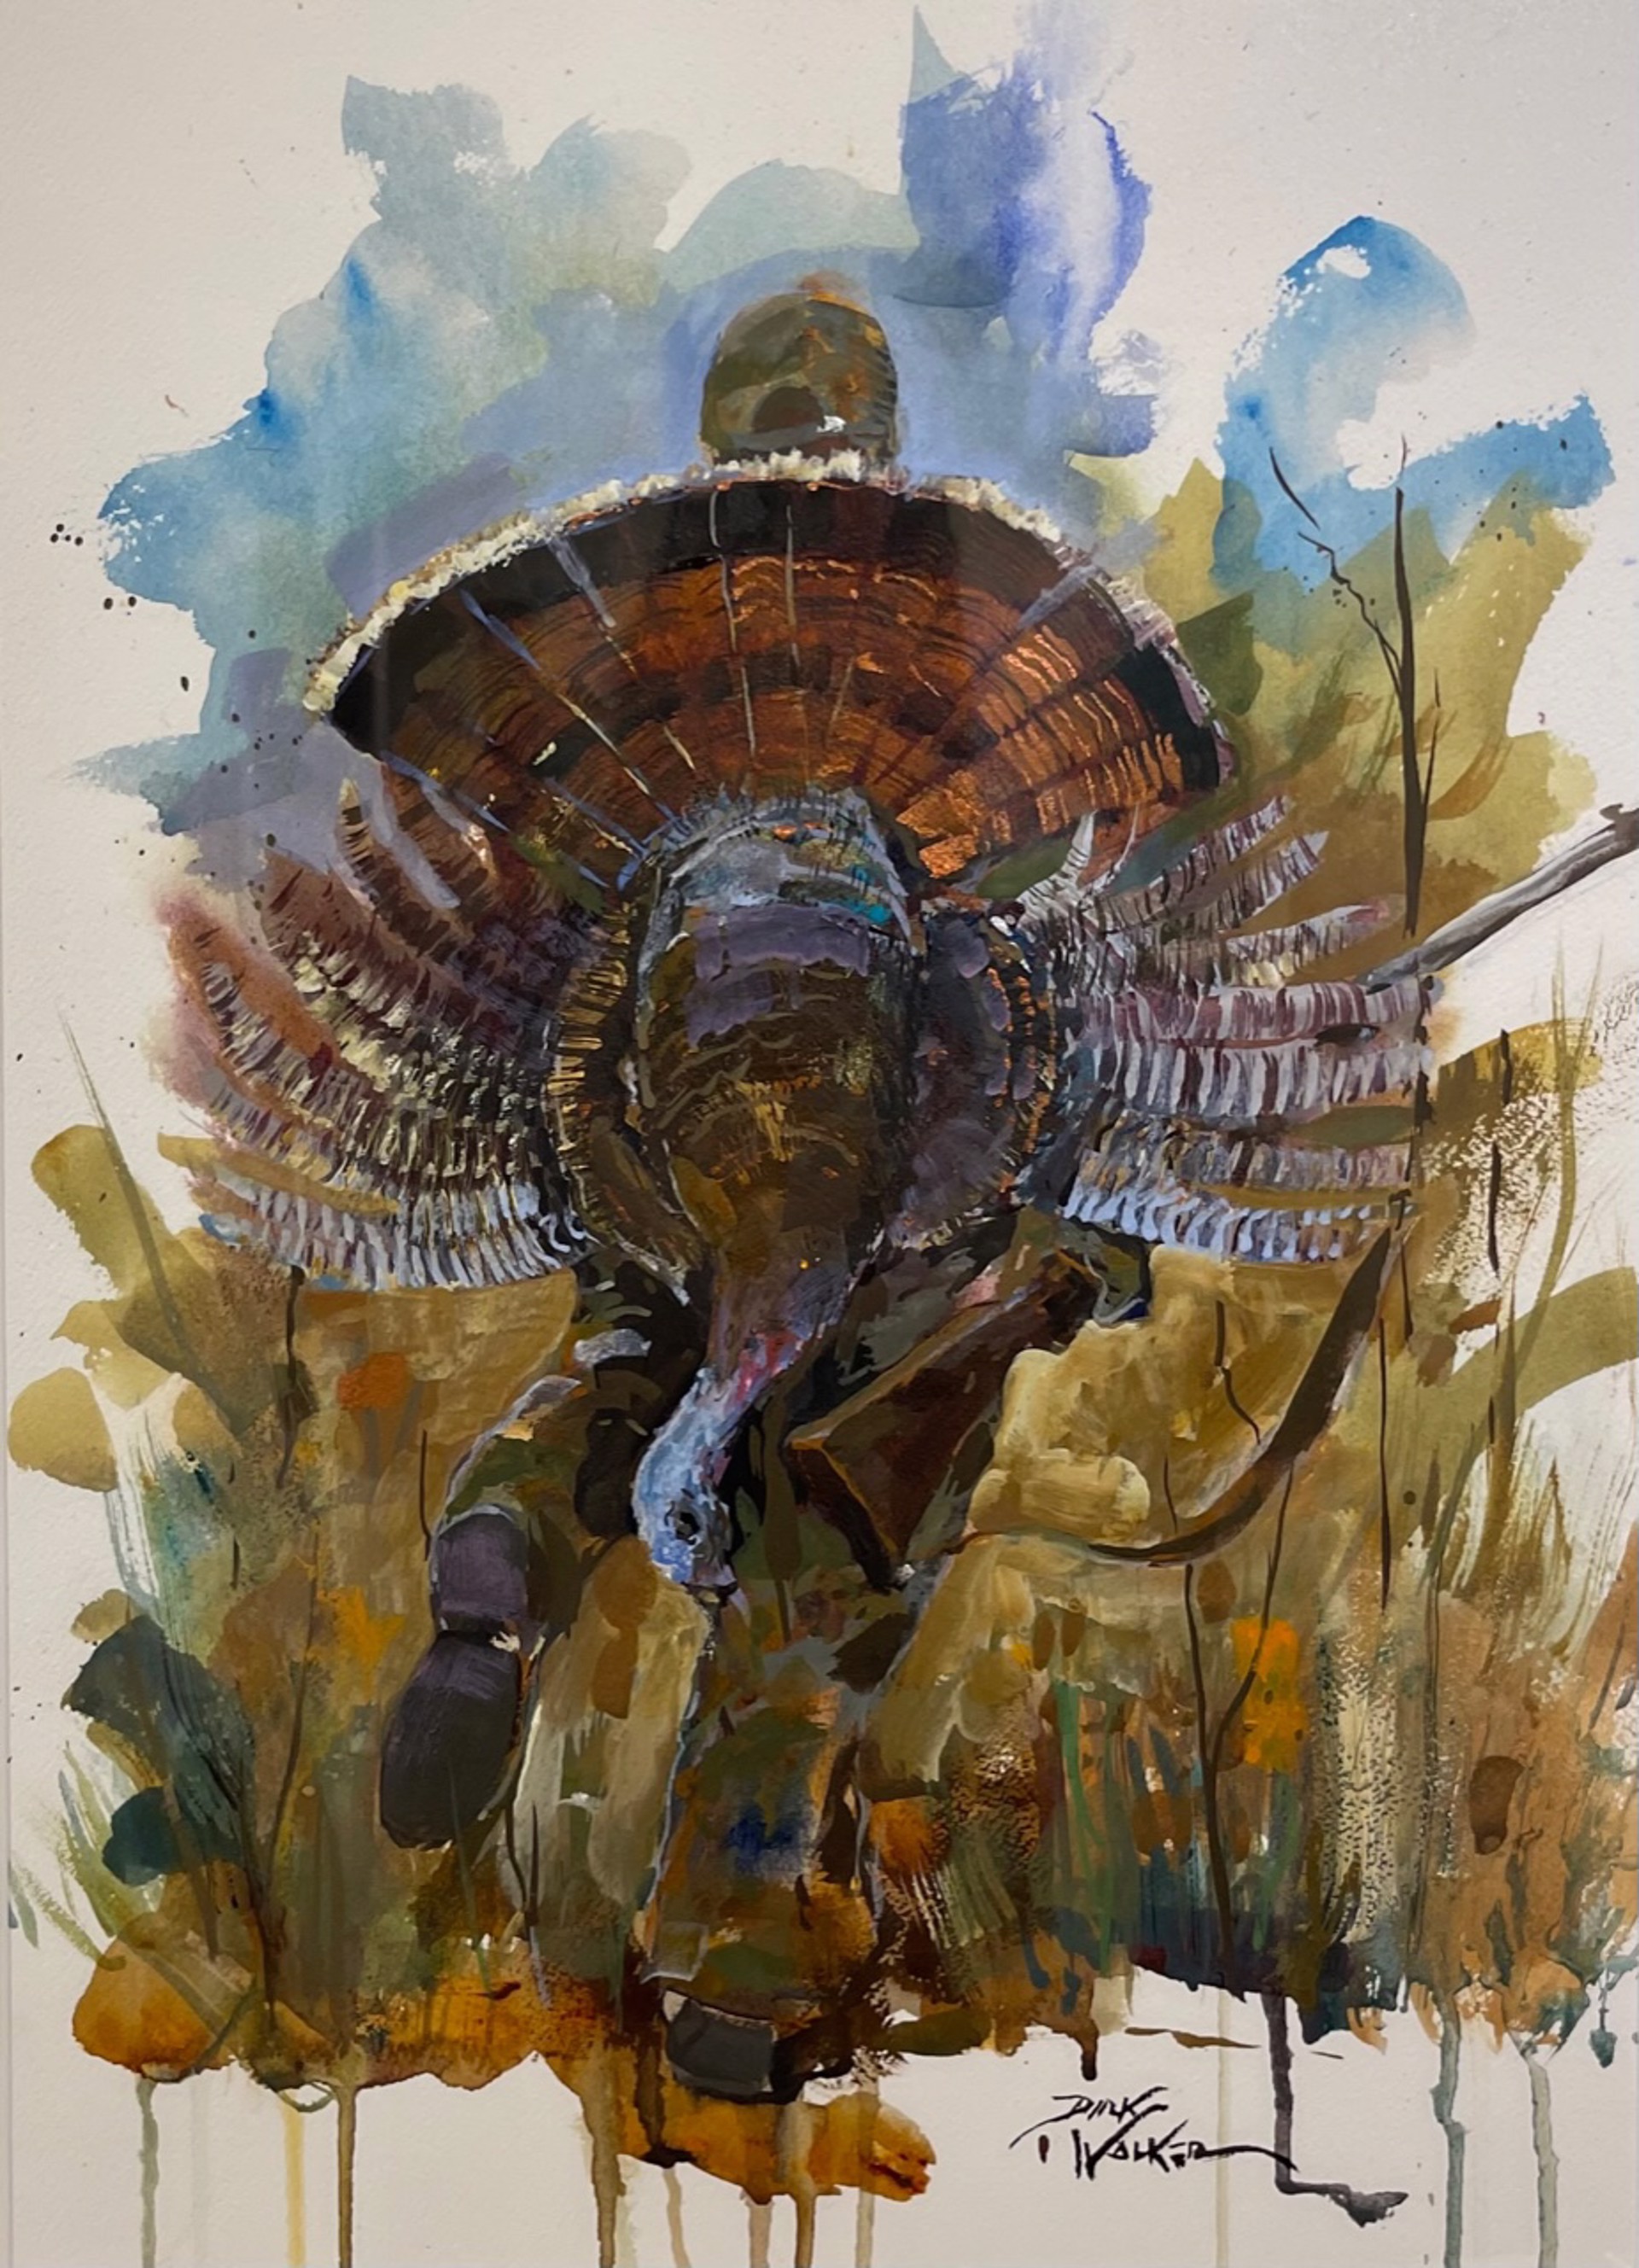 First Turkey of the Season by Dirk Walker